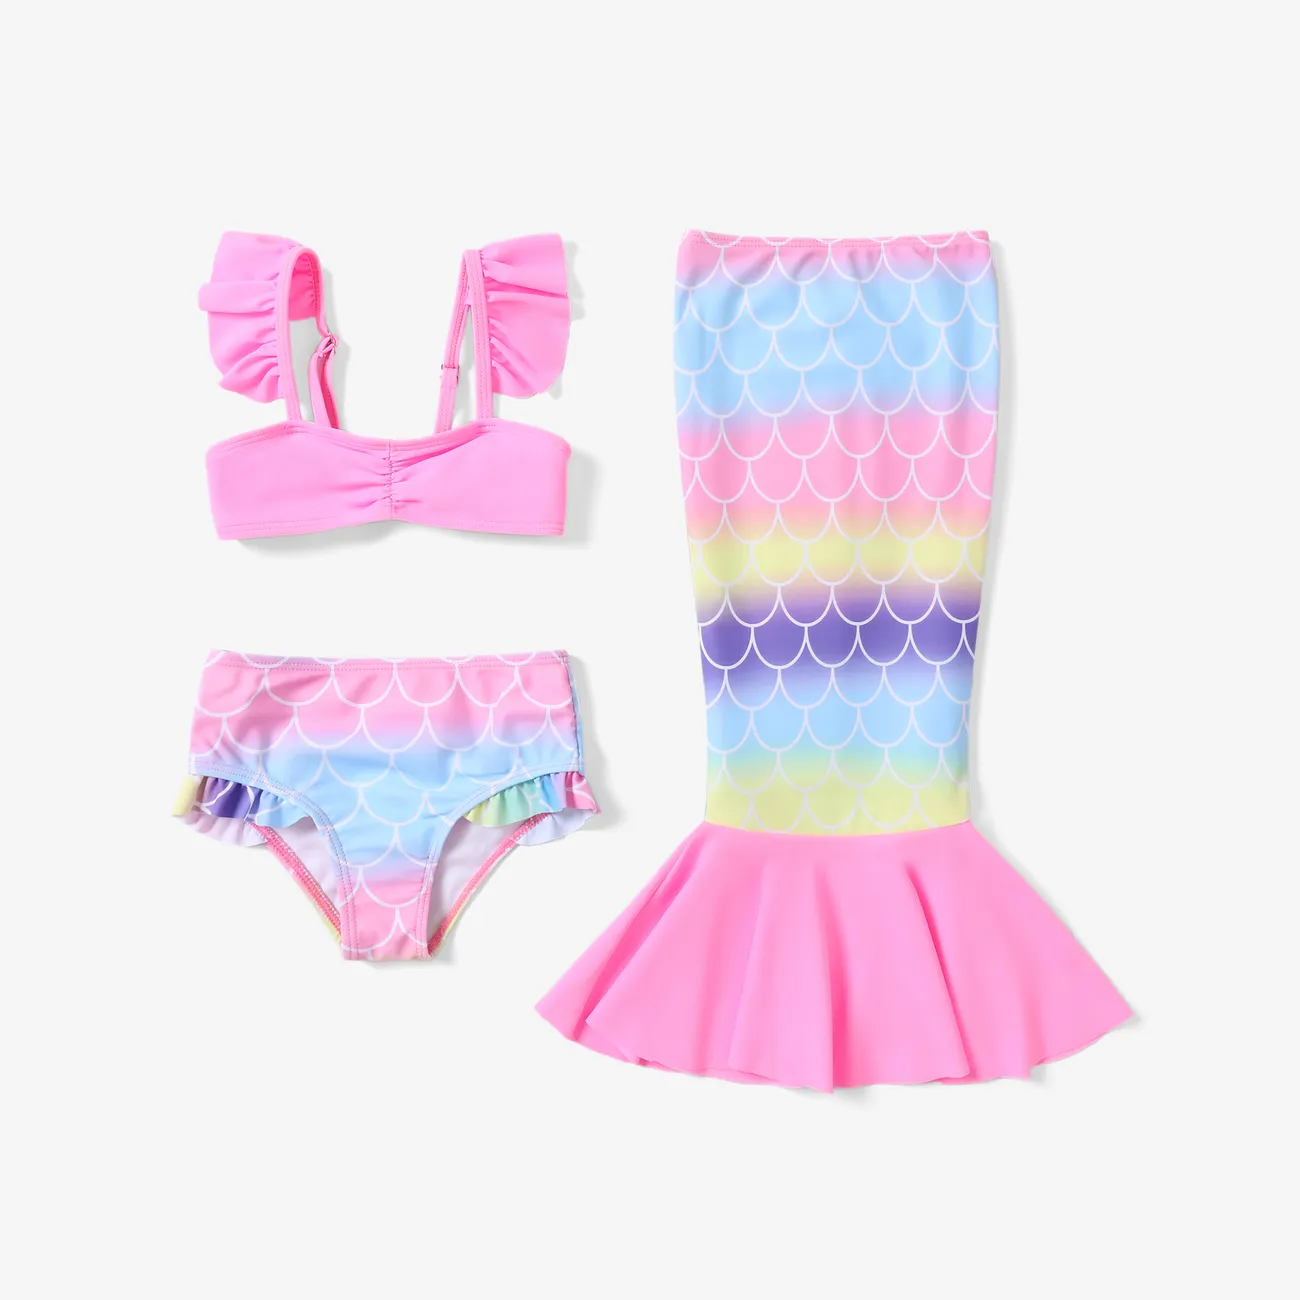 3件套幼兒/兒童美人魚荷葉邊泳裝套裝 粉色 big image 1